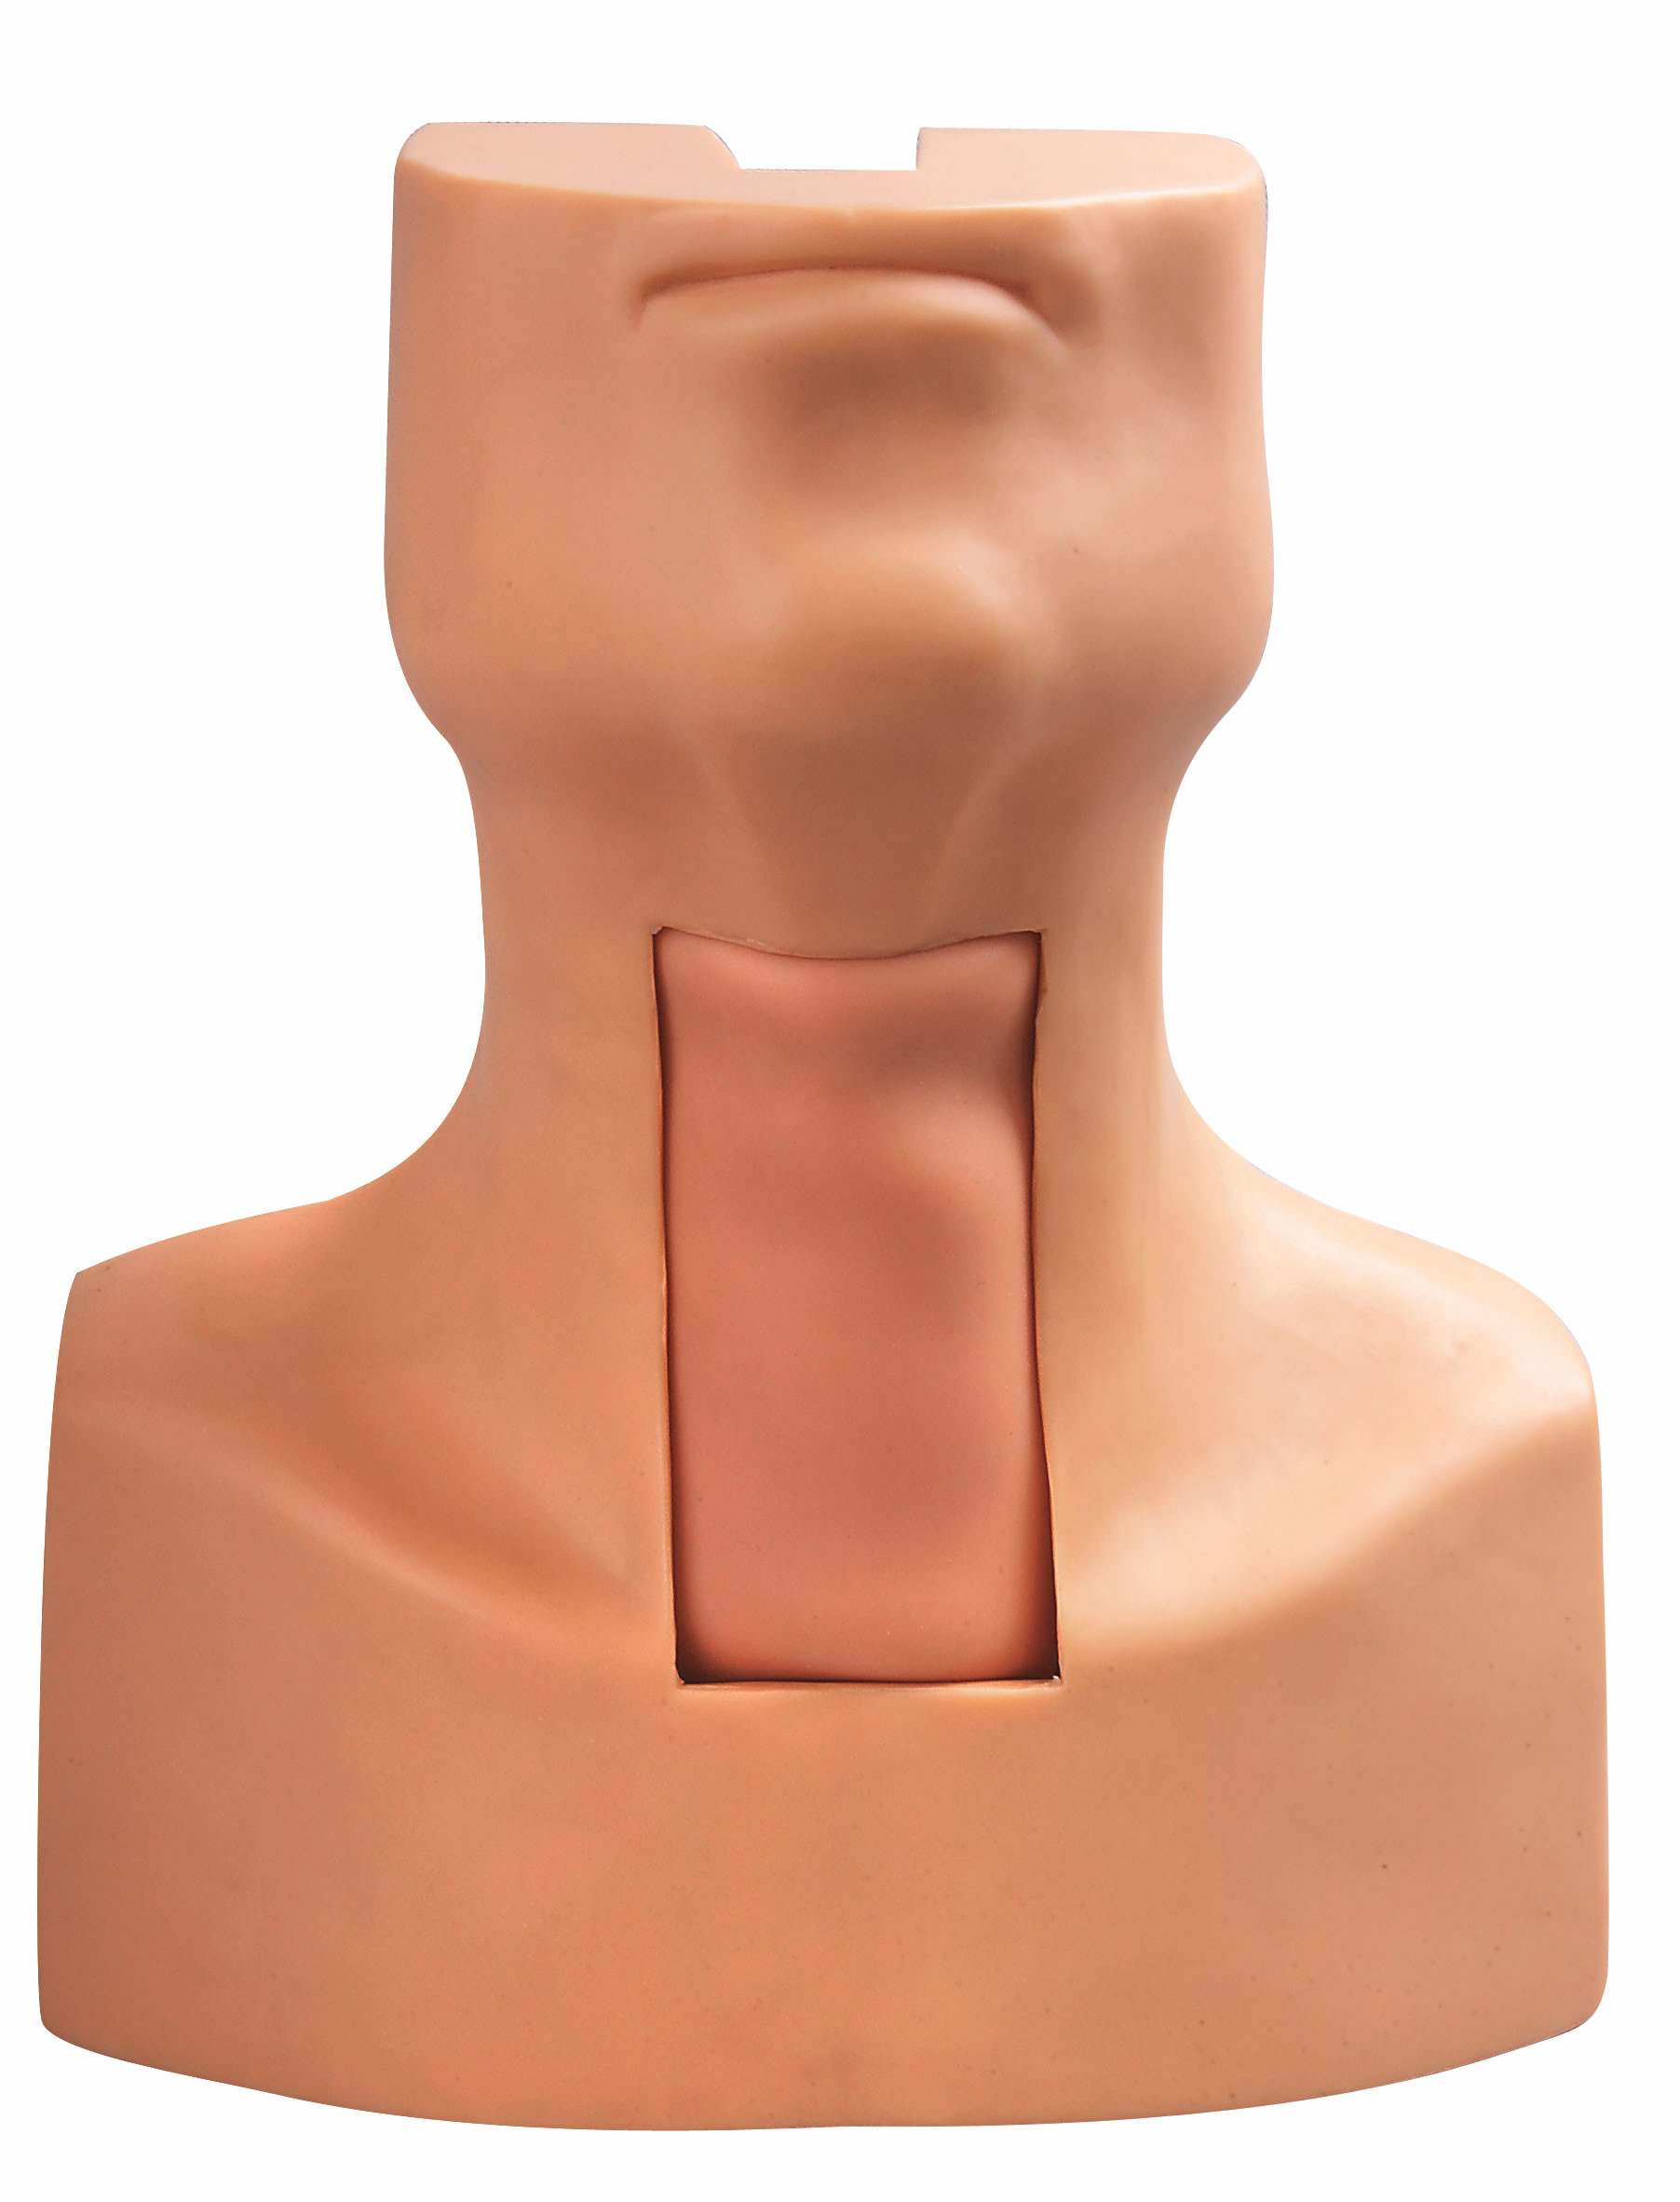 Modello di intubazione di puntura della tracheotomia con la pelle simulata del collo e della trachea per prepararsi